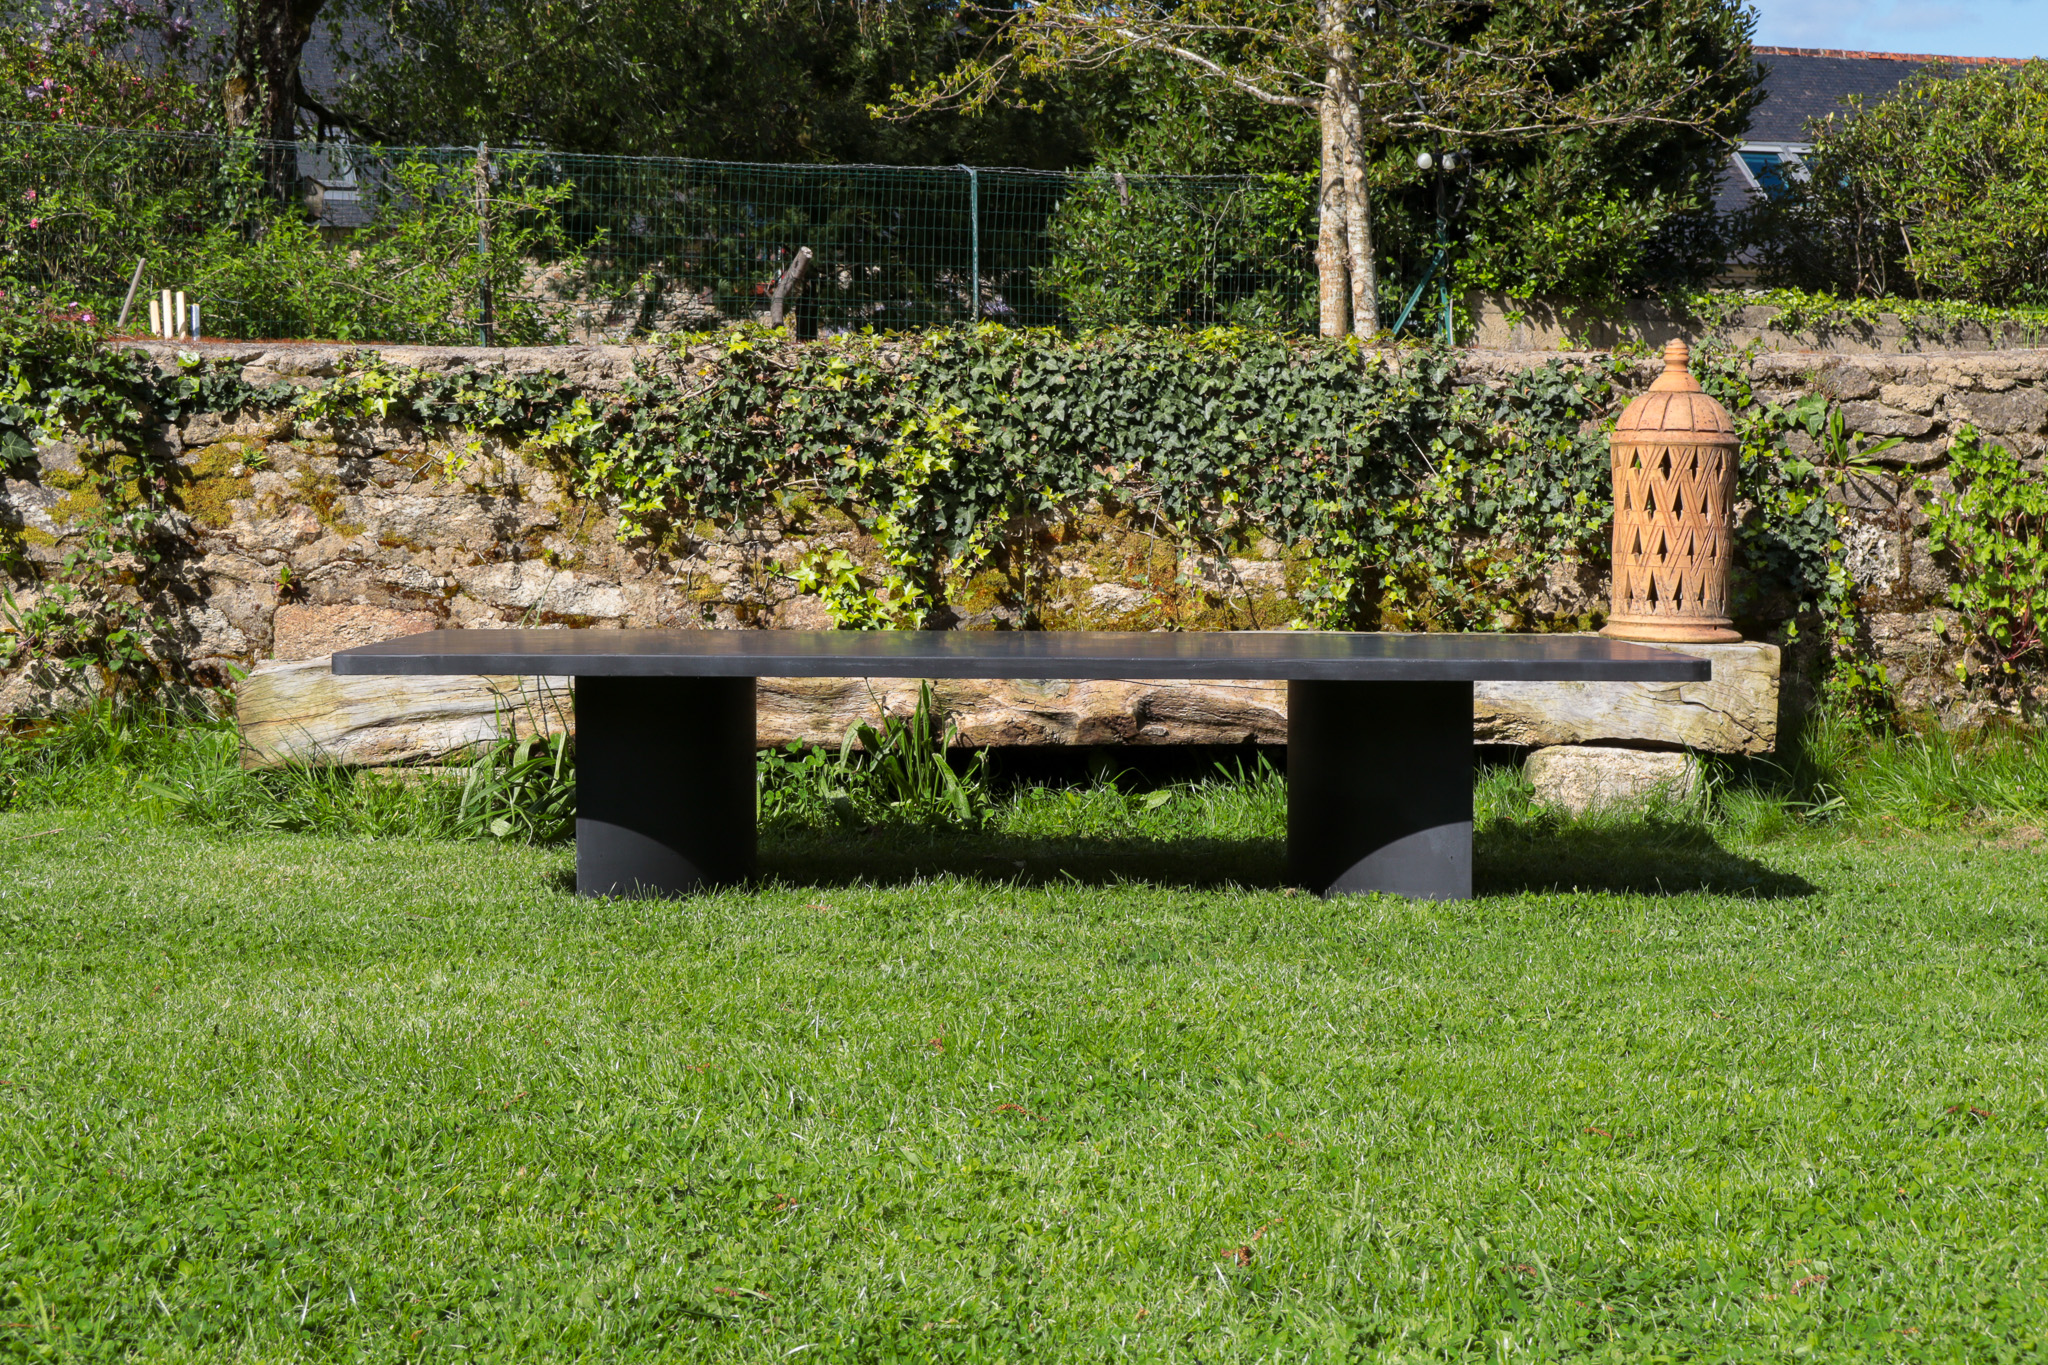 Table basse Carmen en béton noire, minéralisé et noirci, elle donne une touche moderne au jardin. Elle est designé par Carmen Maurice Architecte.